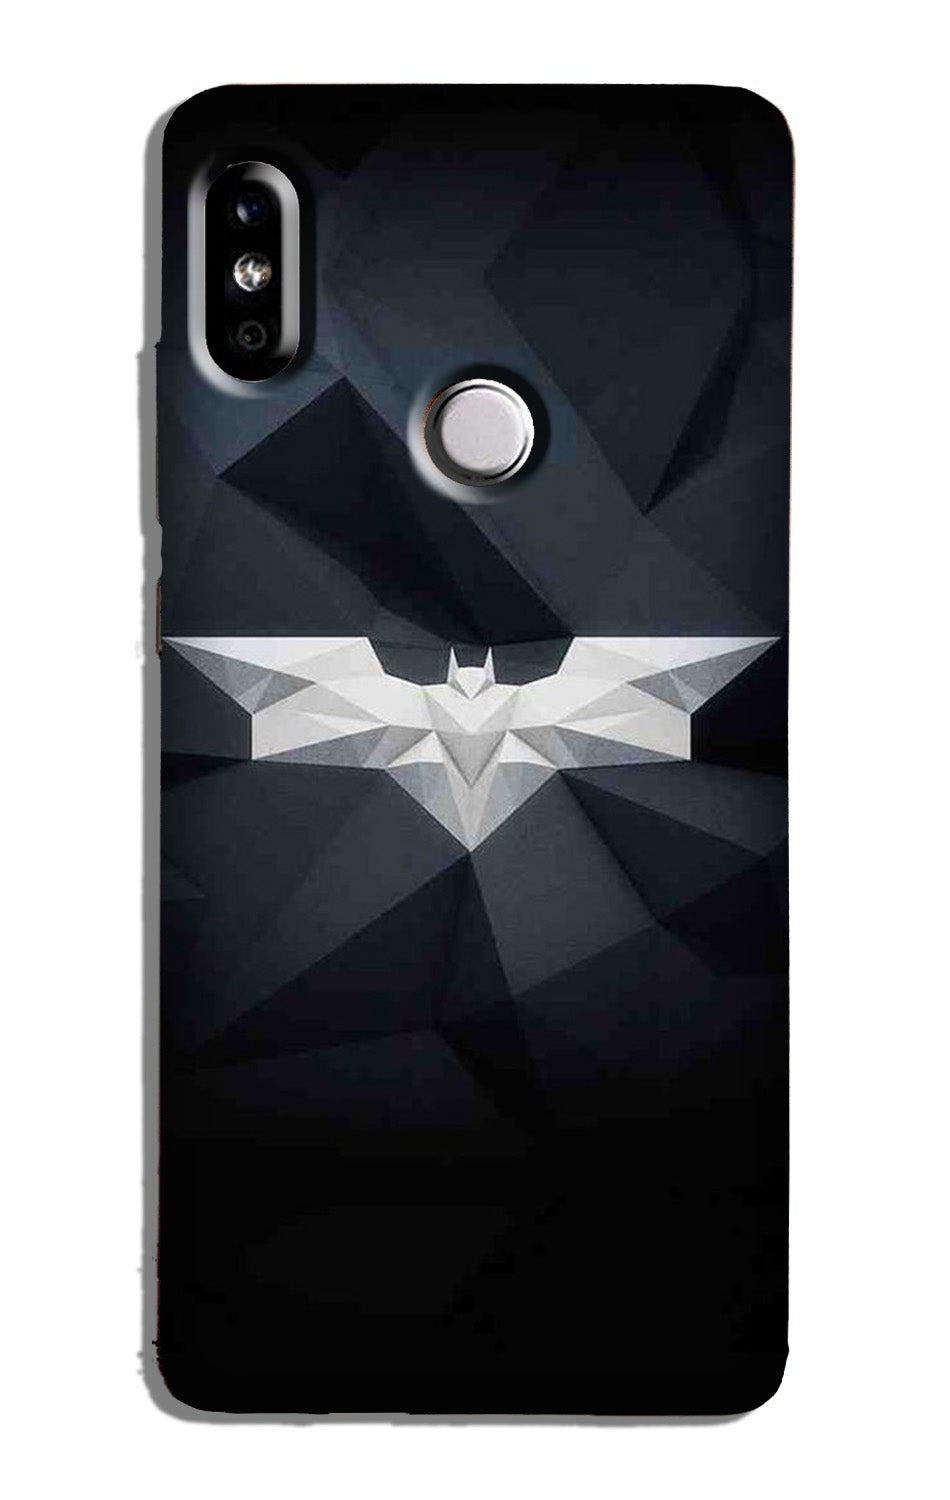 Batman Case for Redmi Note 6 Pro